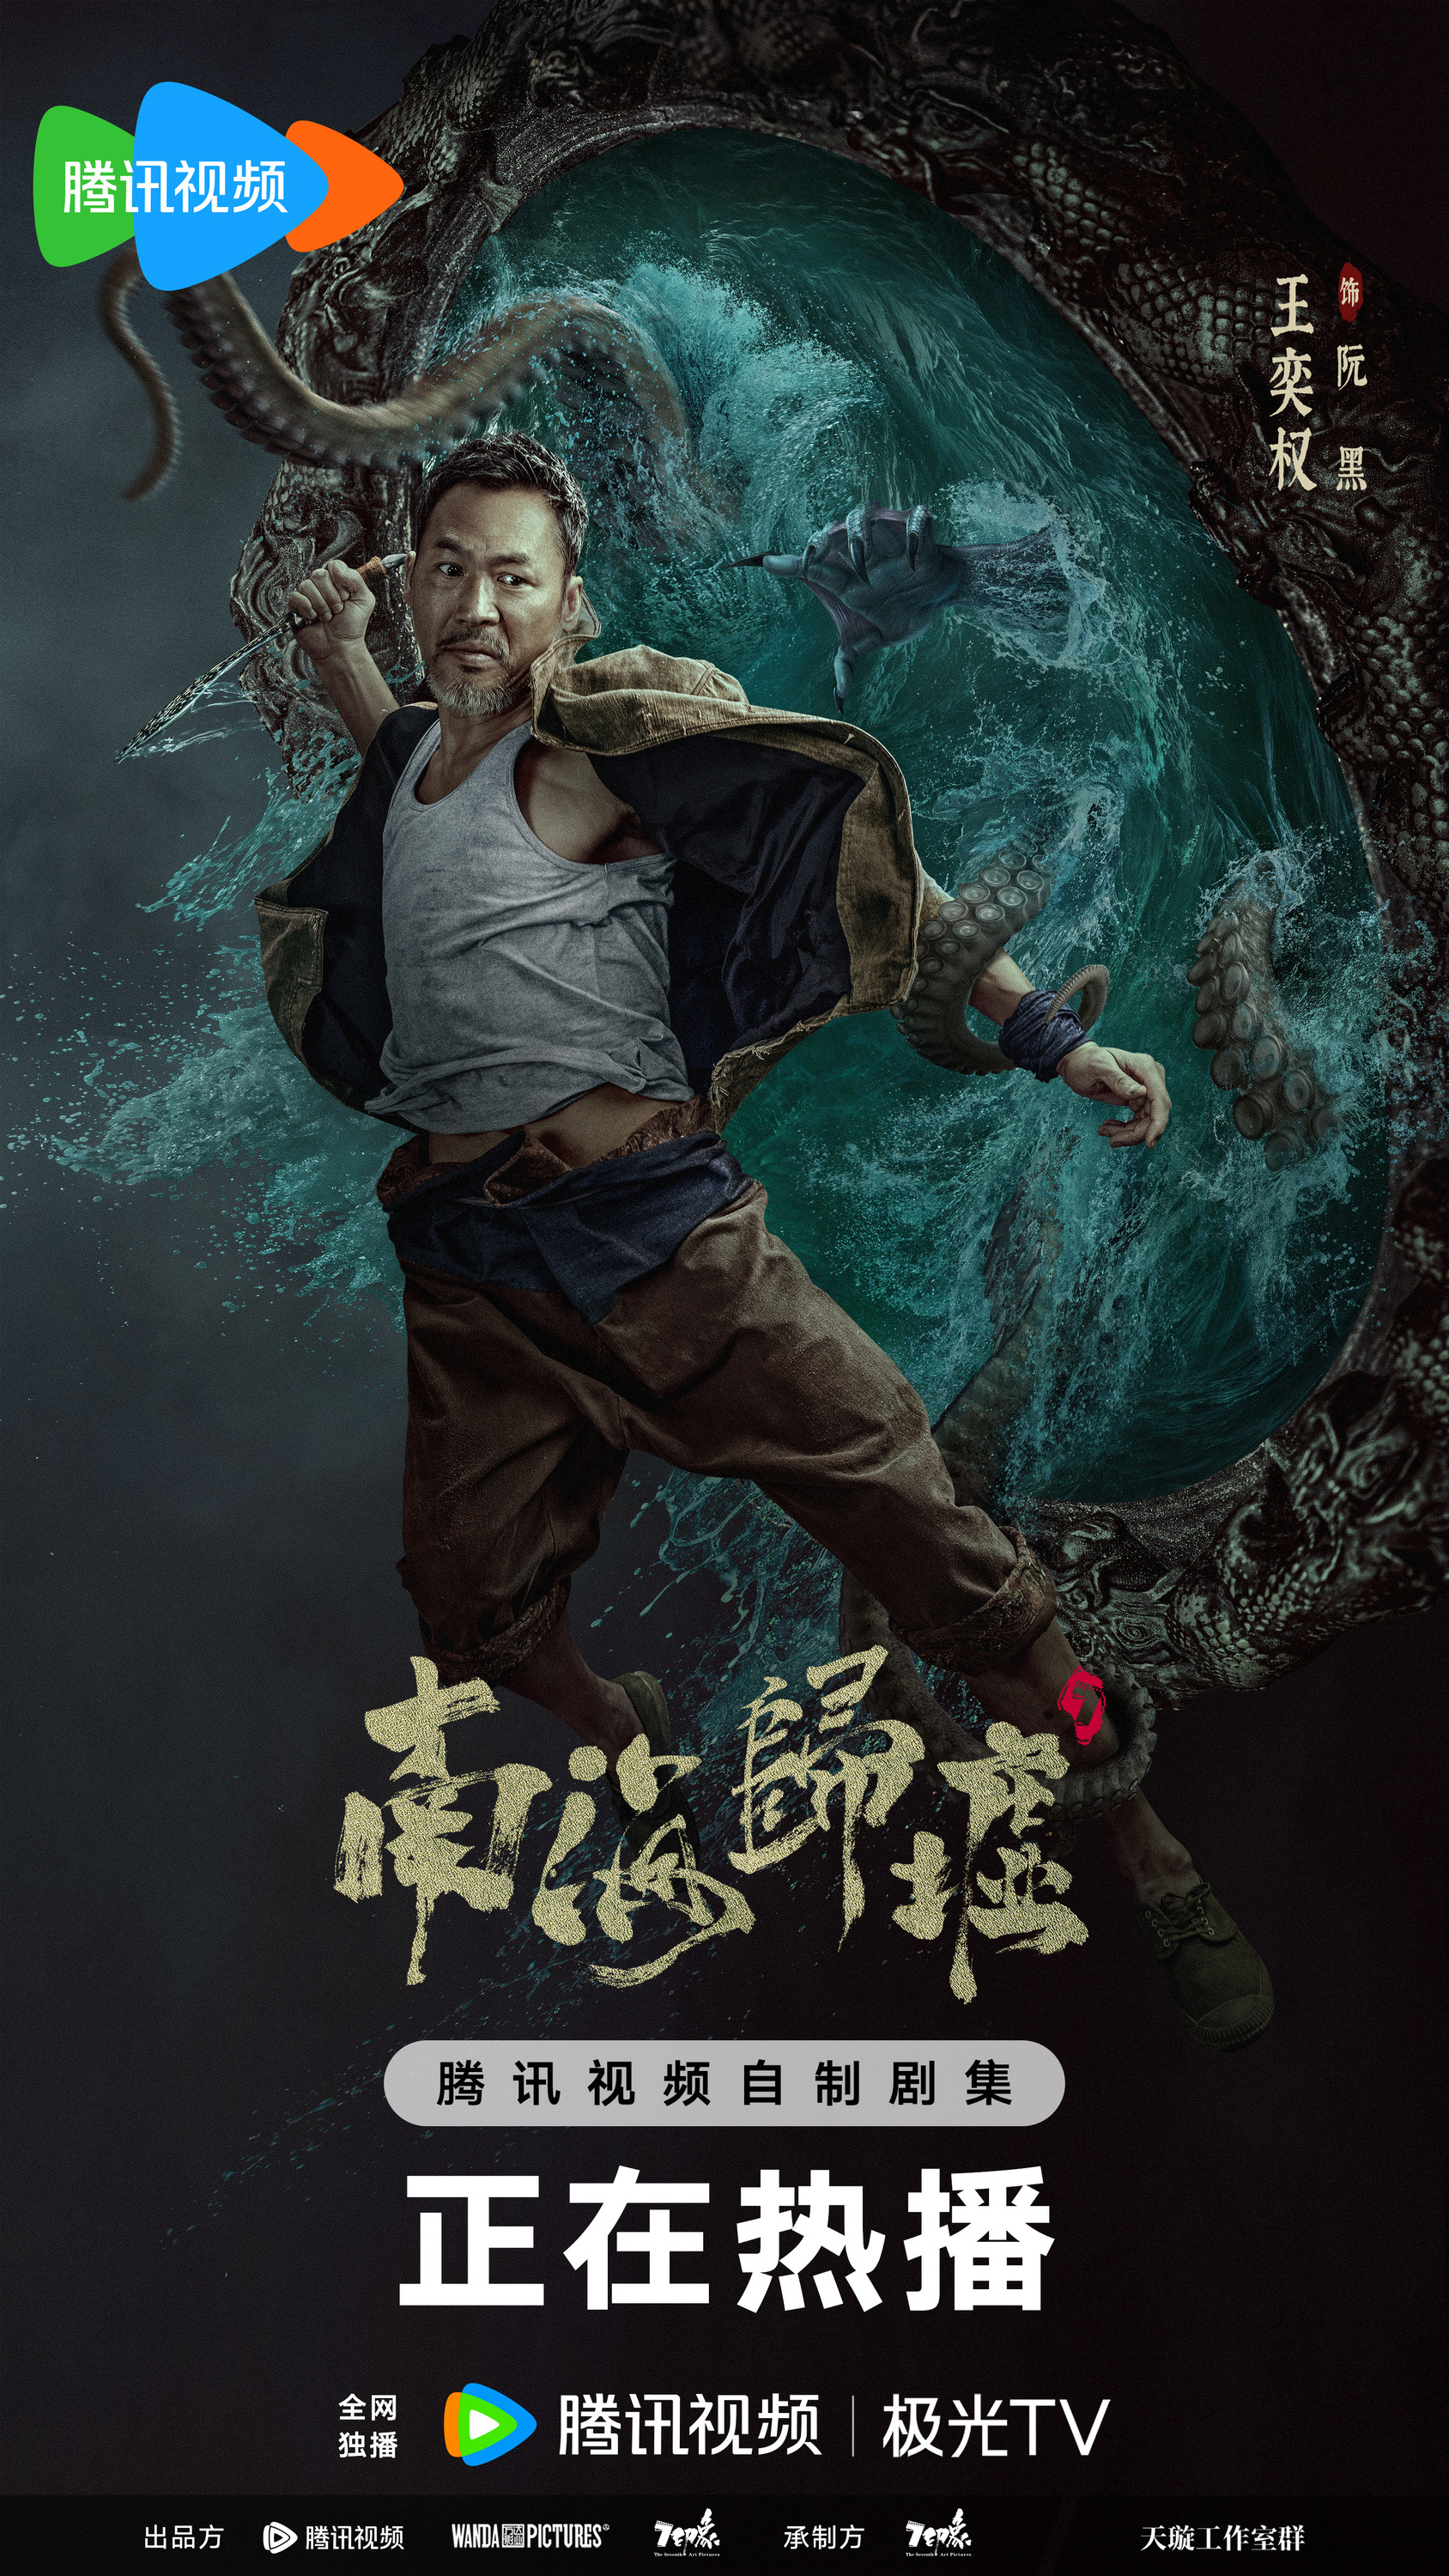 Mega Sized TV Poster Image for Nan hai gui xu (#5 of 6)